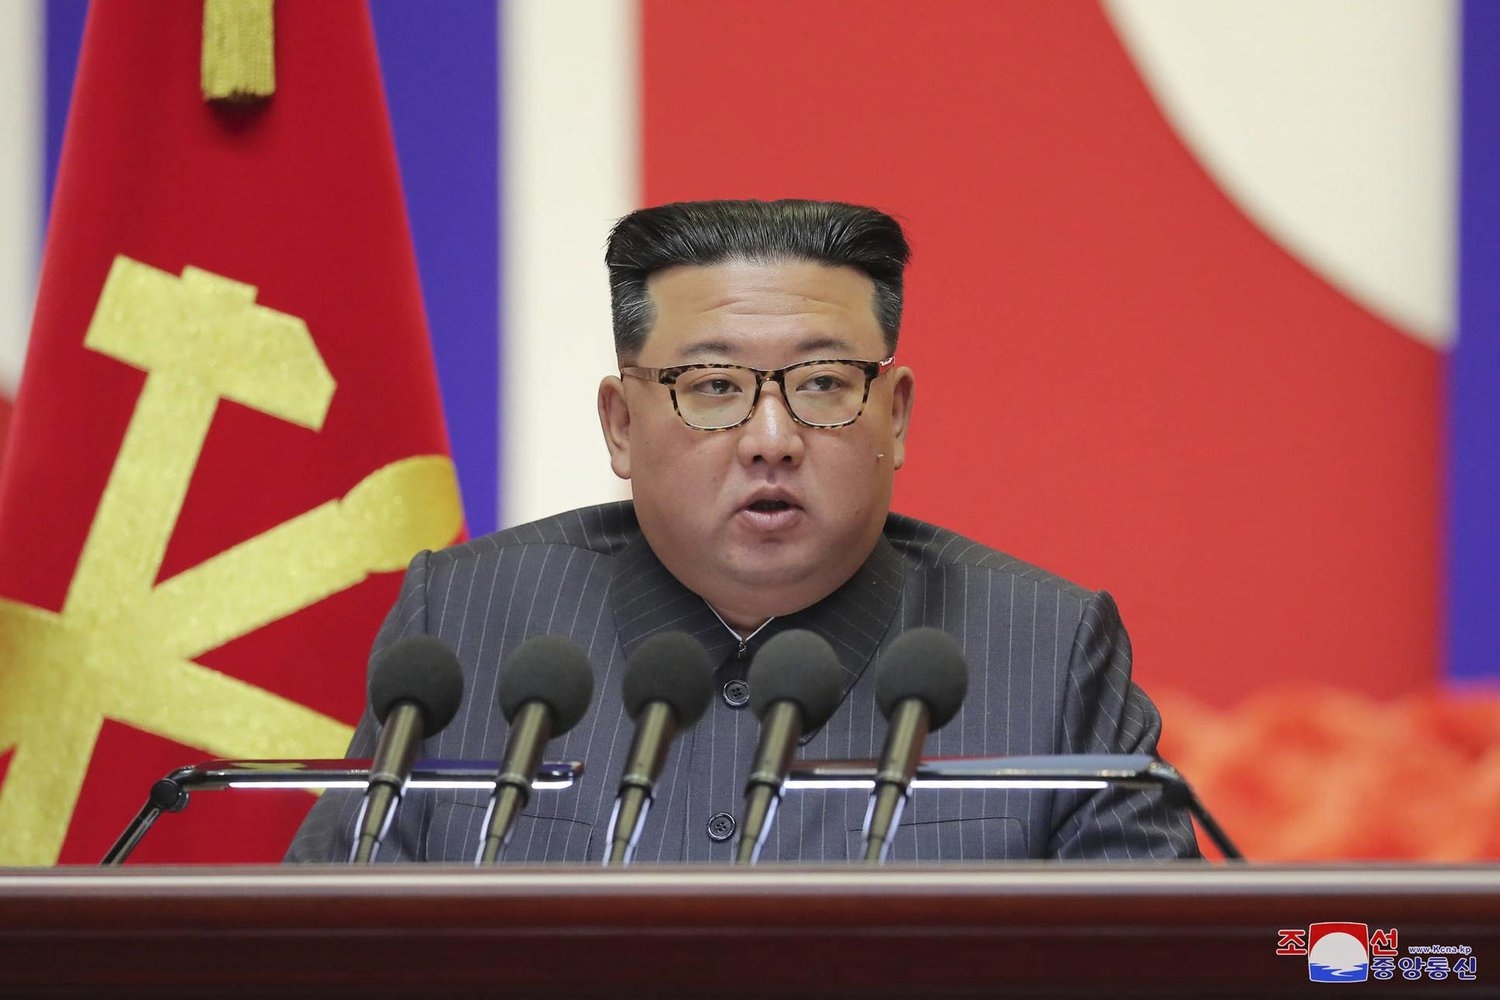 بحضور كيم... كوريا الشمالية تبدأ اجتماعاً للحزب الحاكم لتحديد استراتيجية الدفاع